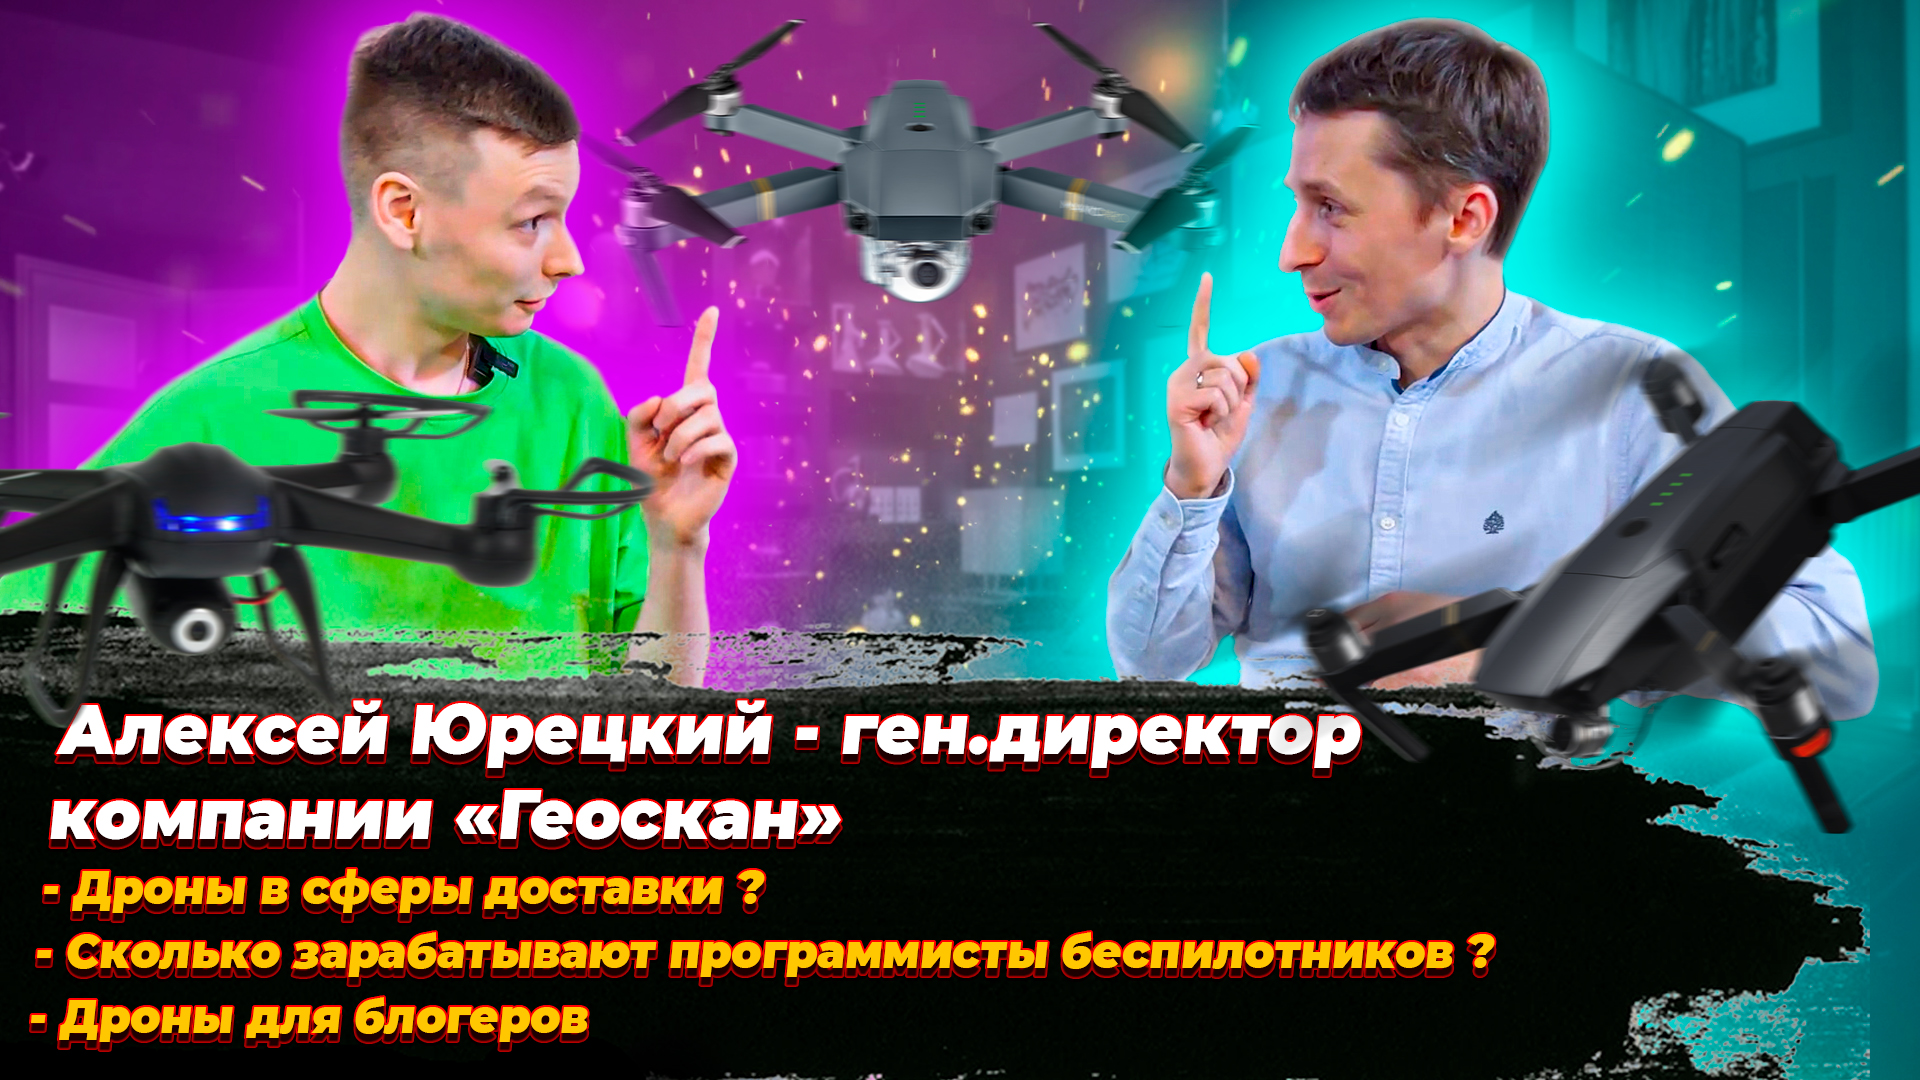 Алексей Юрецкий о идее создания беспилотников, зарплате программистов дронов, "Геоскан" через 5 лет